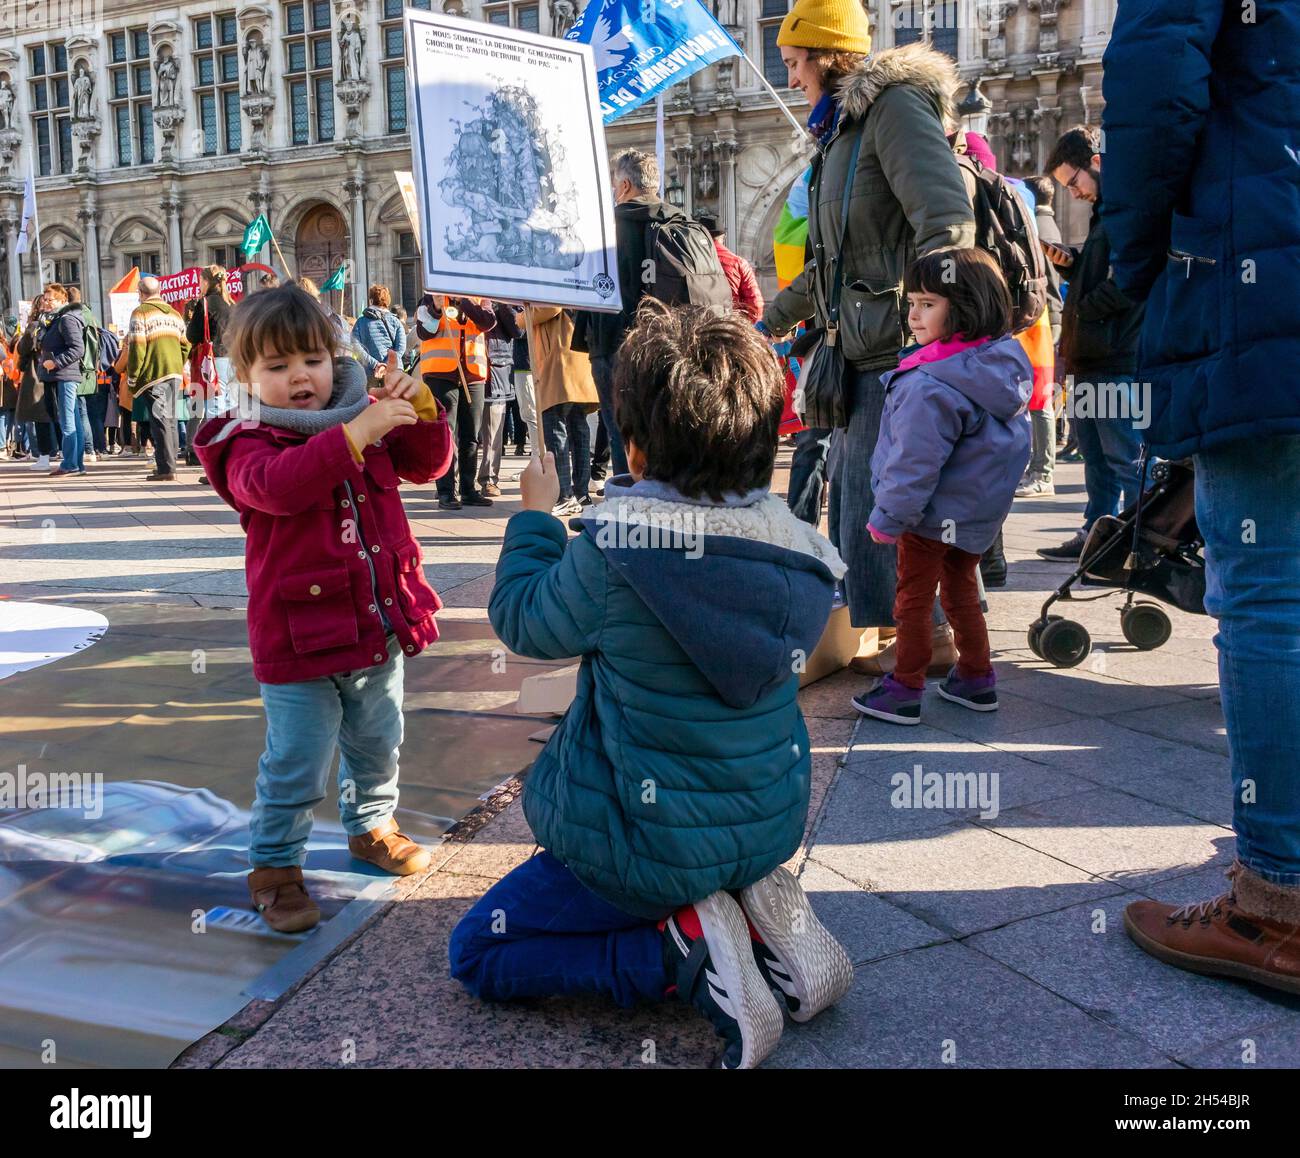 Paris, France, ONG françaises, manifestation contre la crise climatique, enfants dont les familles protestent, problème mondial, enfant portant des pancartes de protestation Banque D'Images